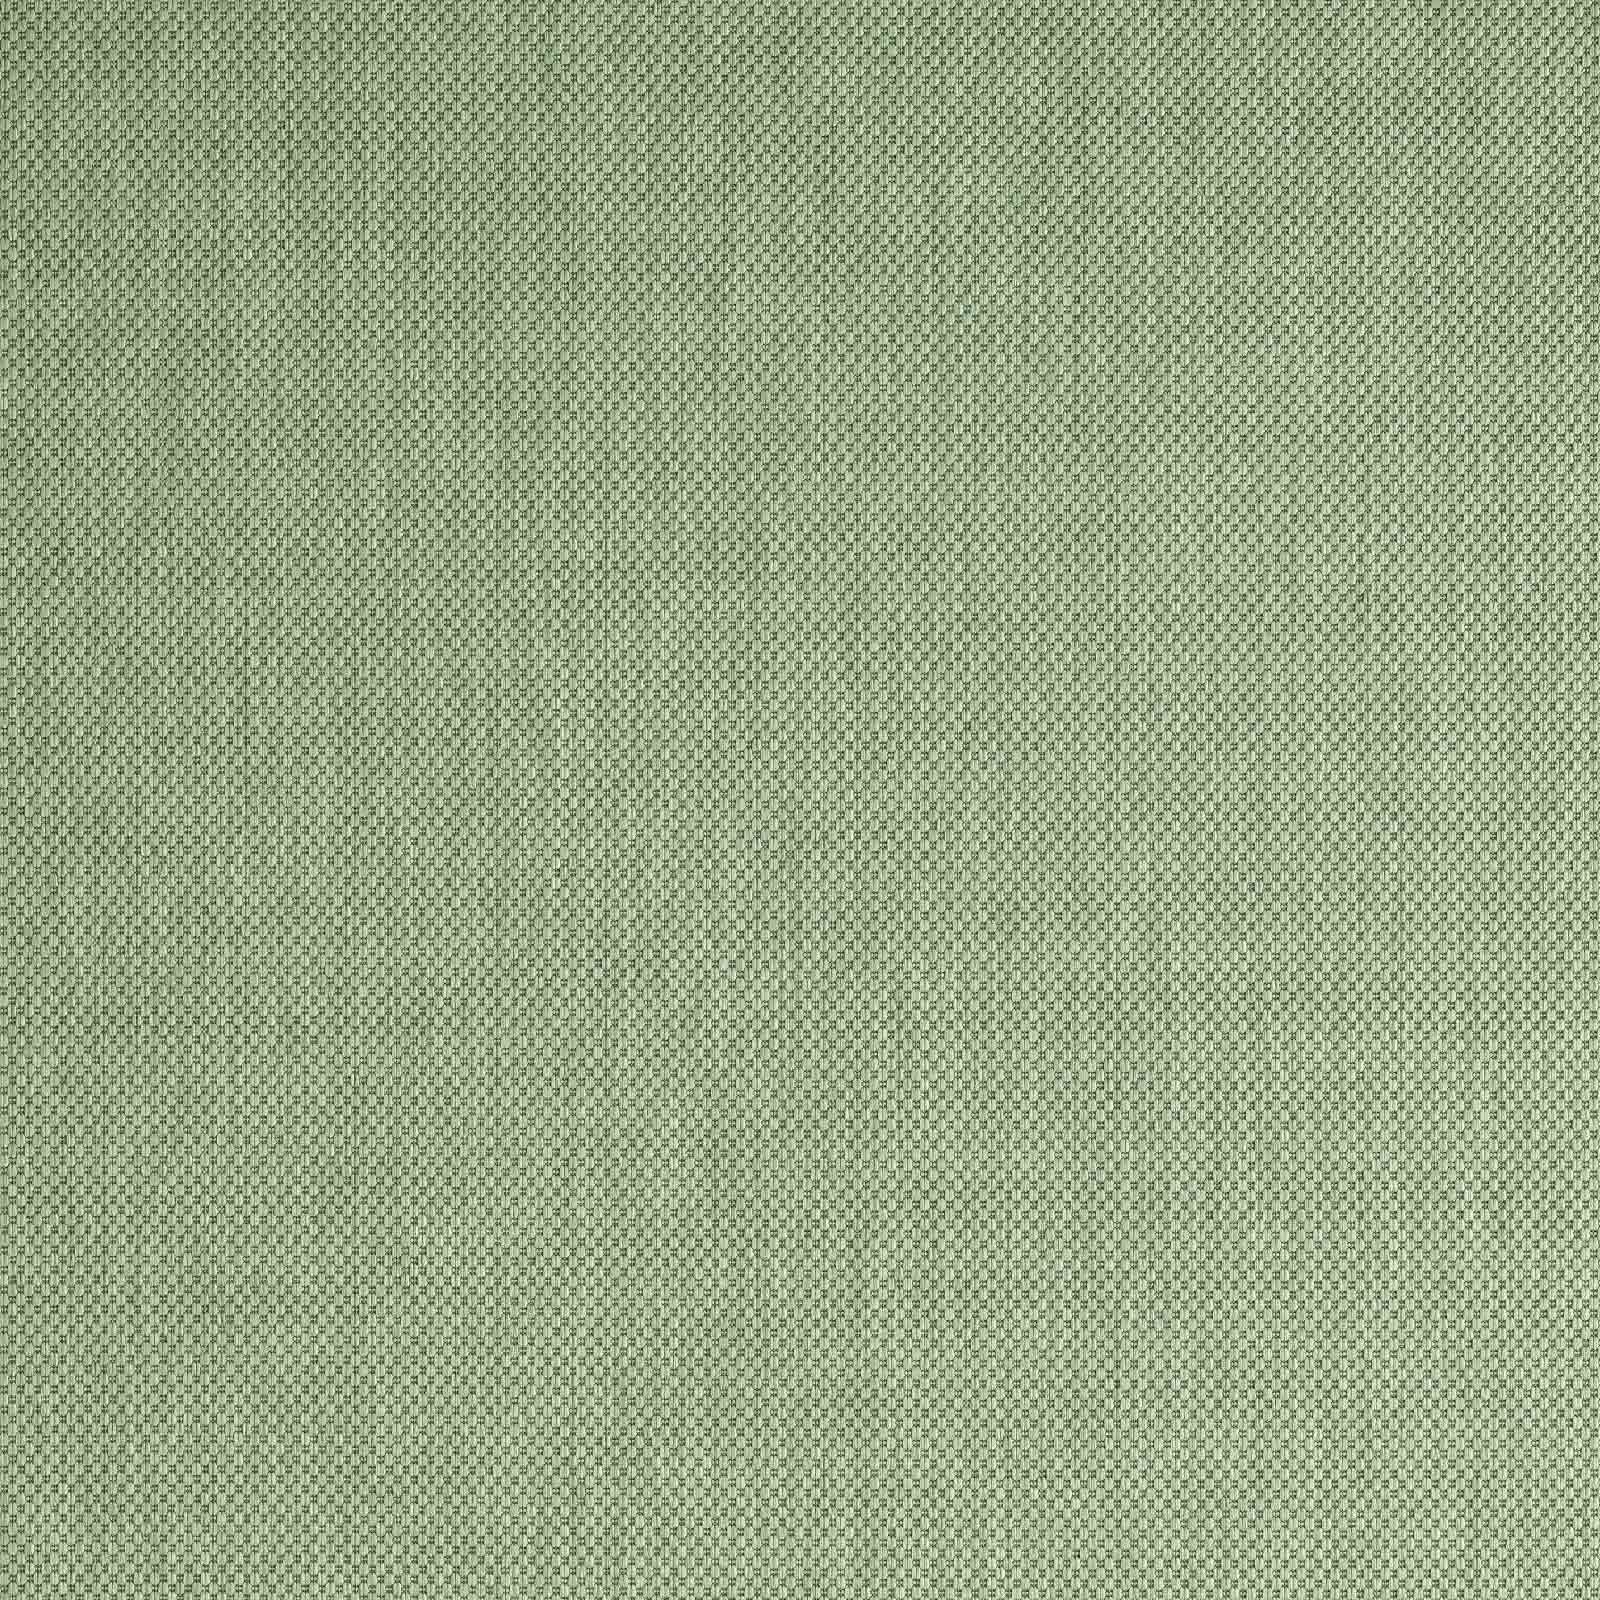 Teppich Regina Teppich aus robustem 67x180 Flachgewebe für In Küche Höhe: uni Garten TaraCarpet, Balkon und 7 rechteckig, unigrün grün Terrasse mm, Wohnzimmer Outdoor